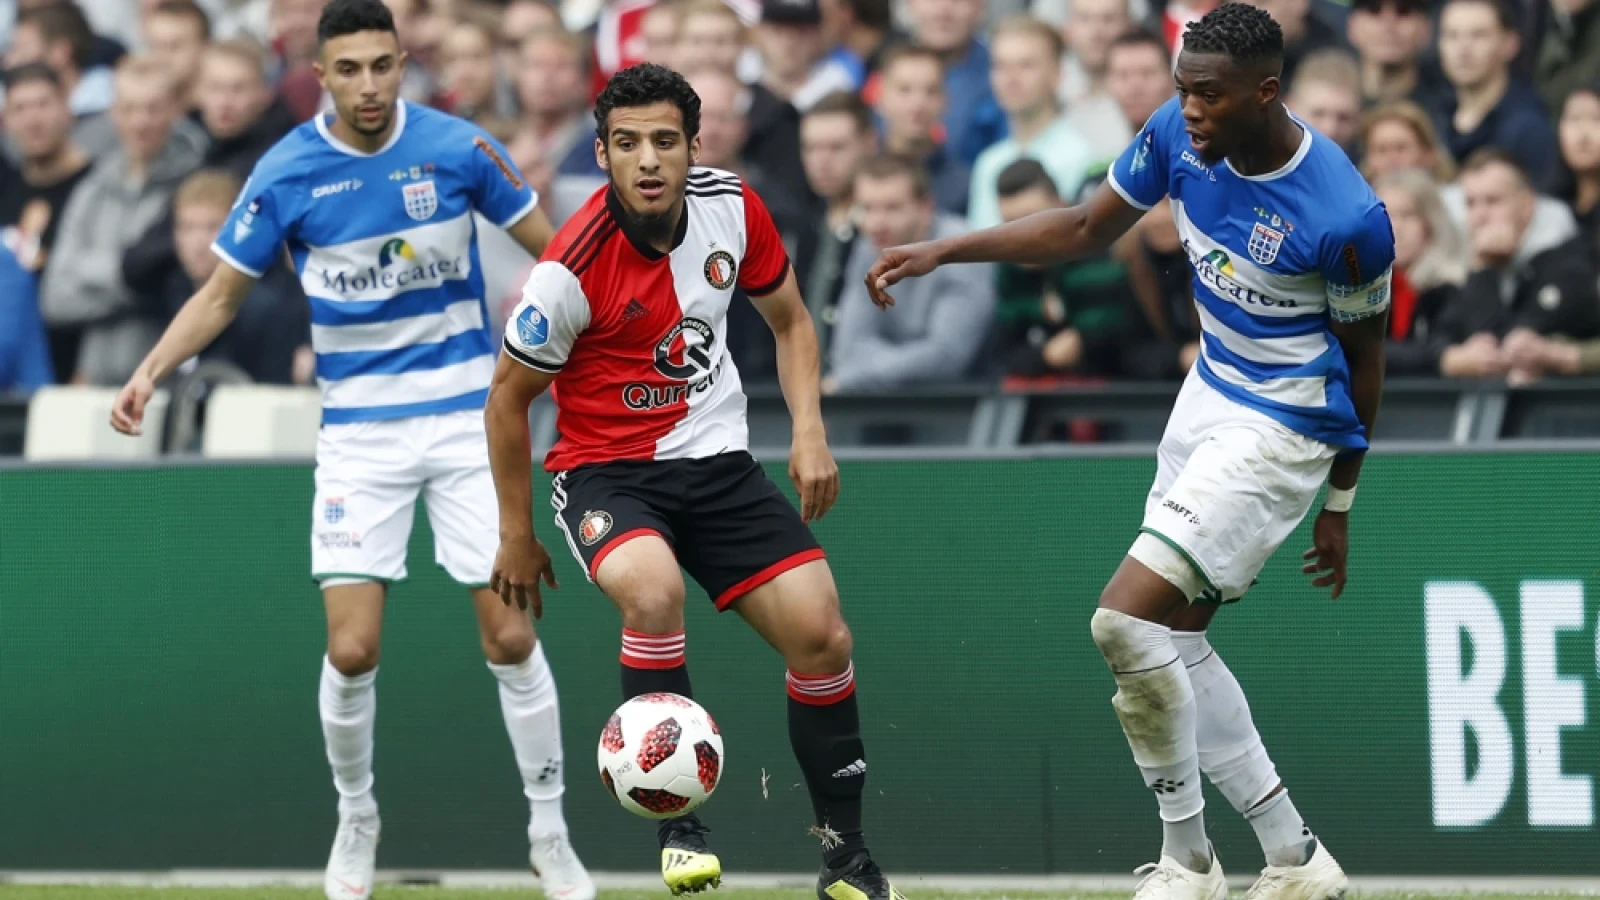 UPDATE | Twee blessuregevallen na wedstrijd van Jong Feyenoord